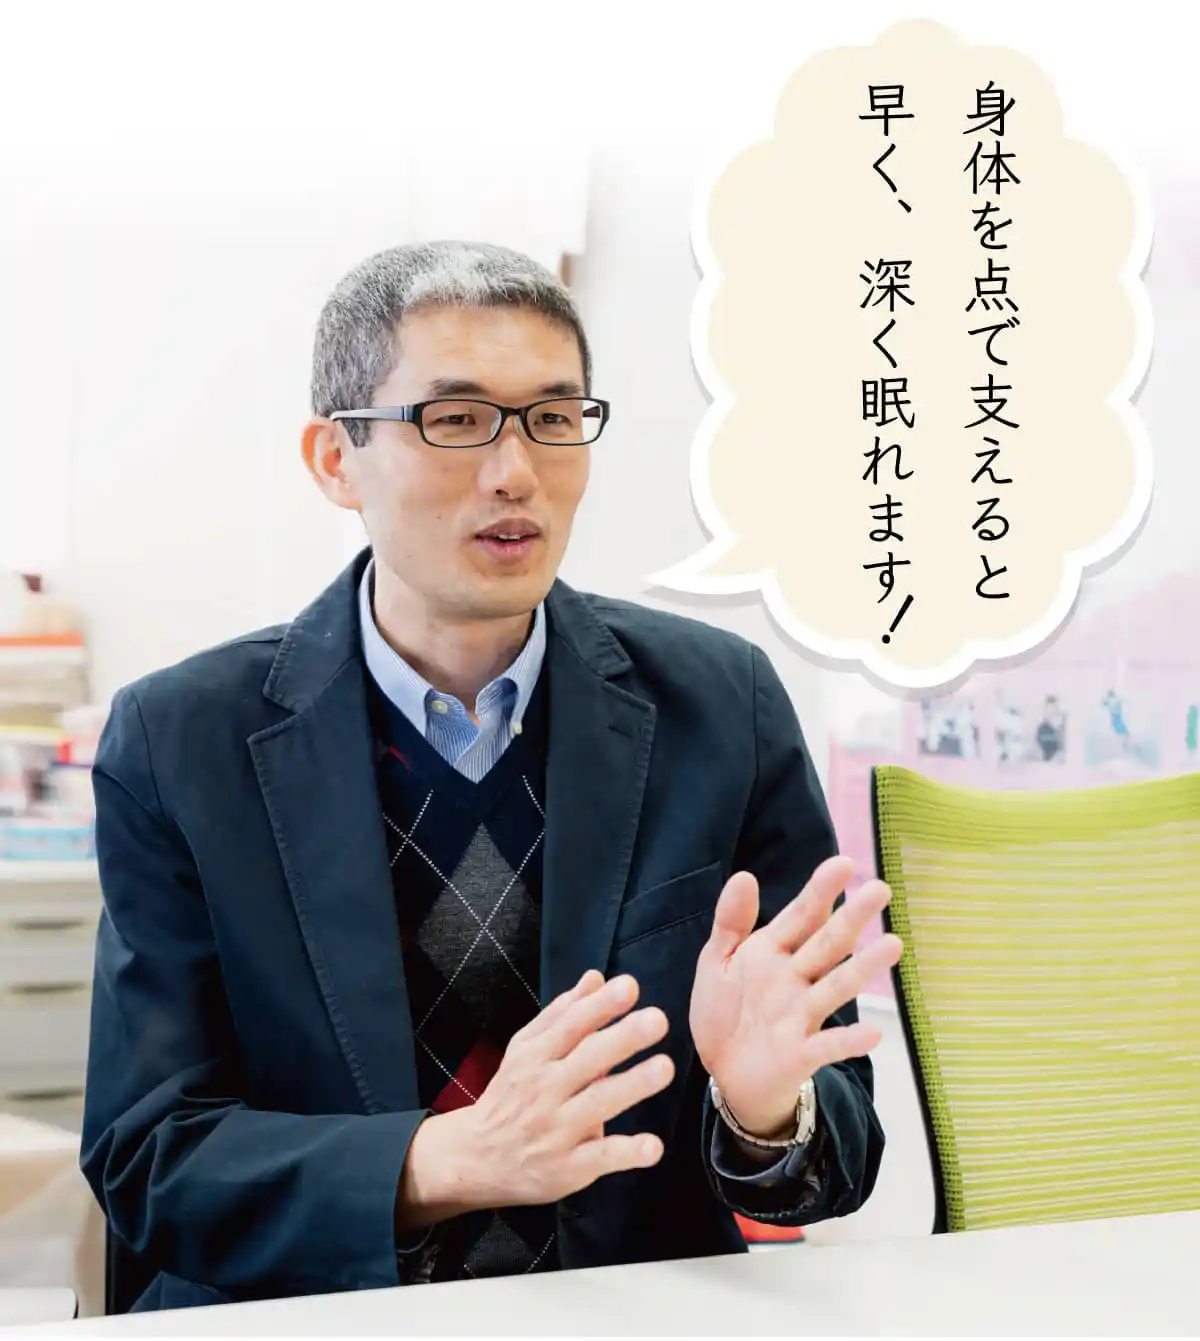 信州大学 吉田宏昭教授「身体を点で支えると早く深く眠れておすすめ」